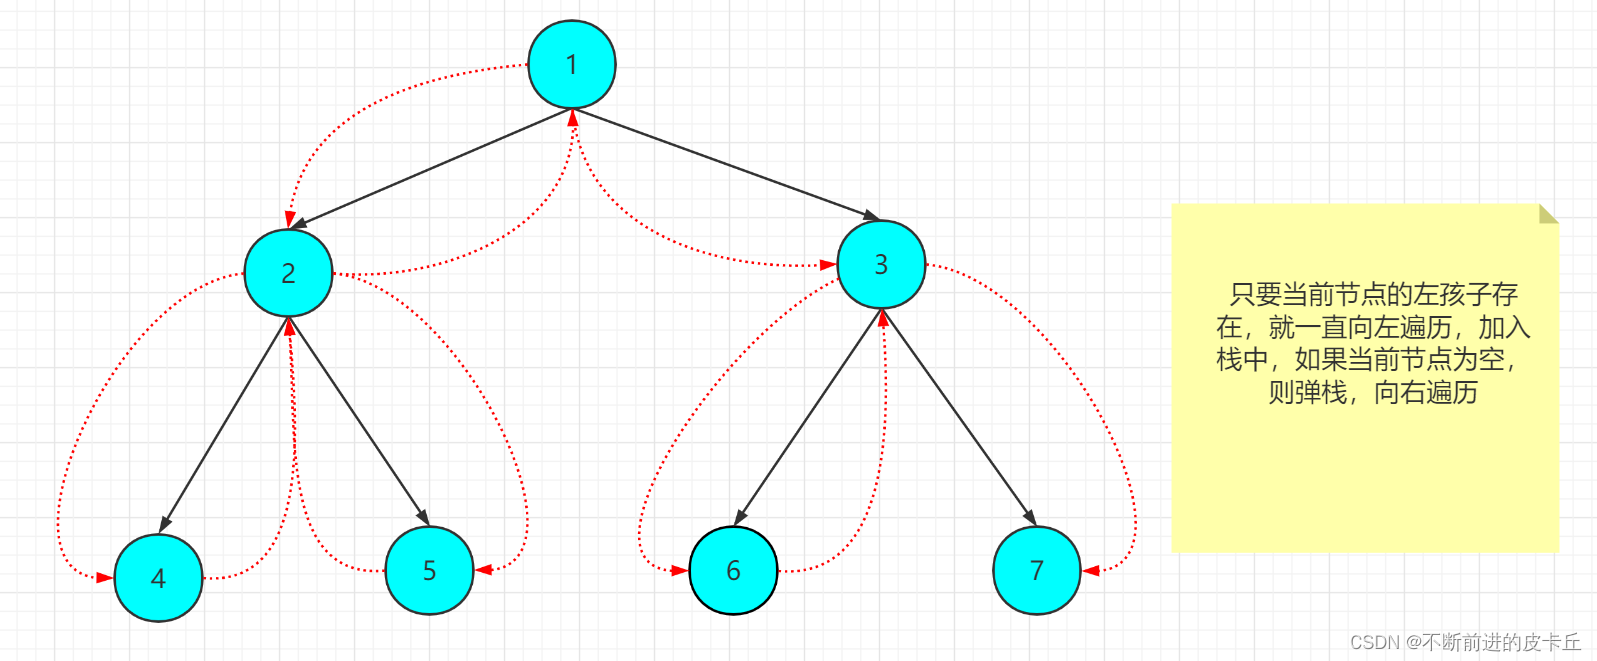 数据结构:二叉树的非递归遍历_leetcode_04